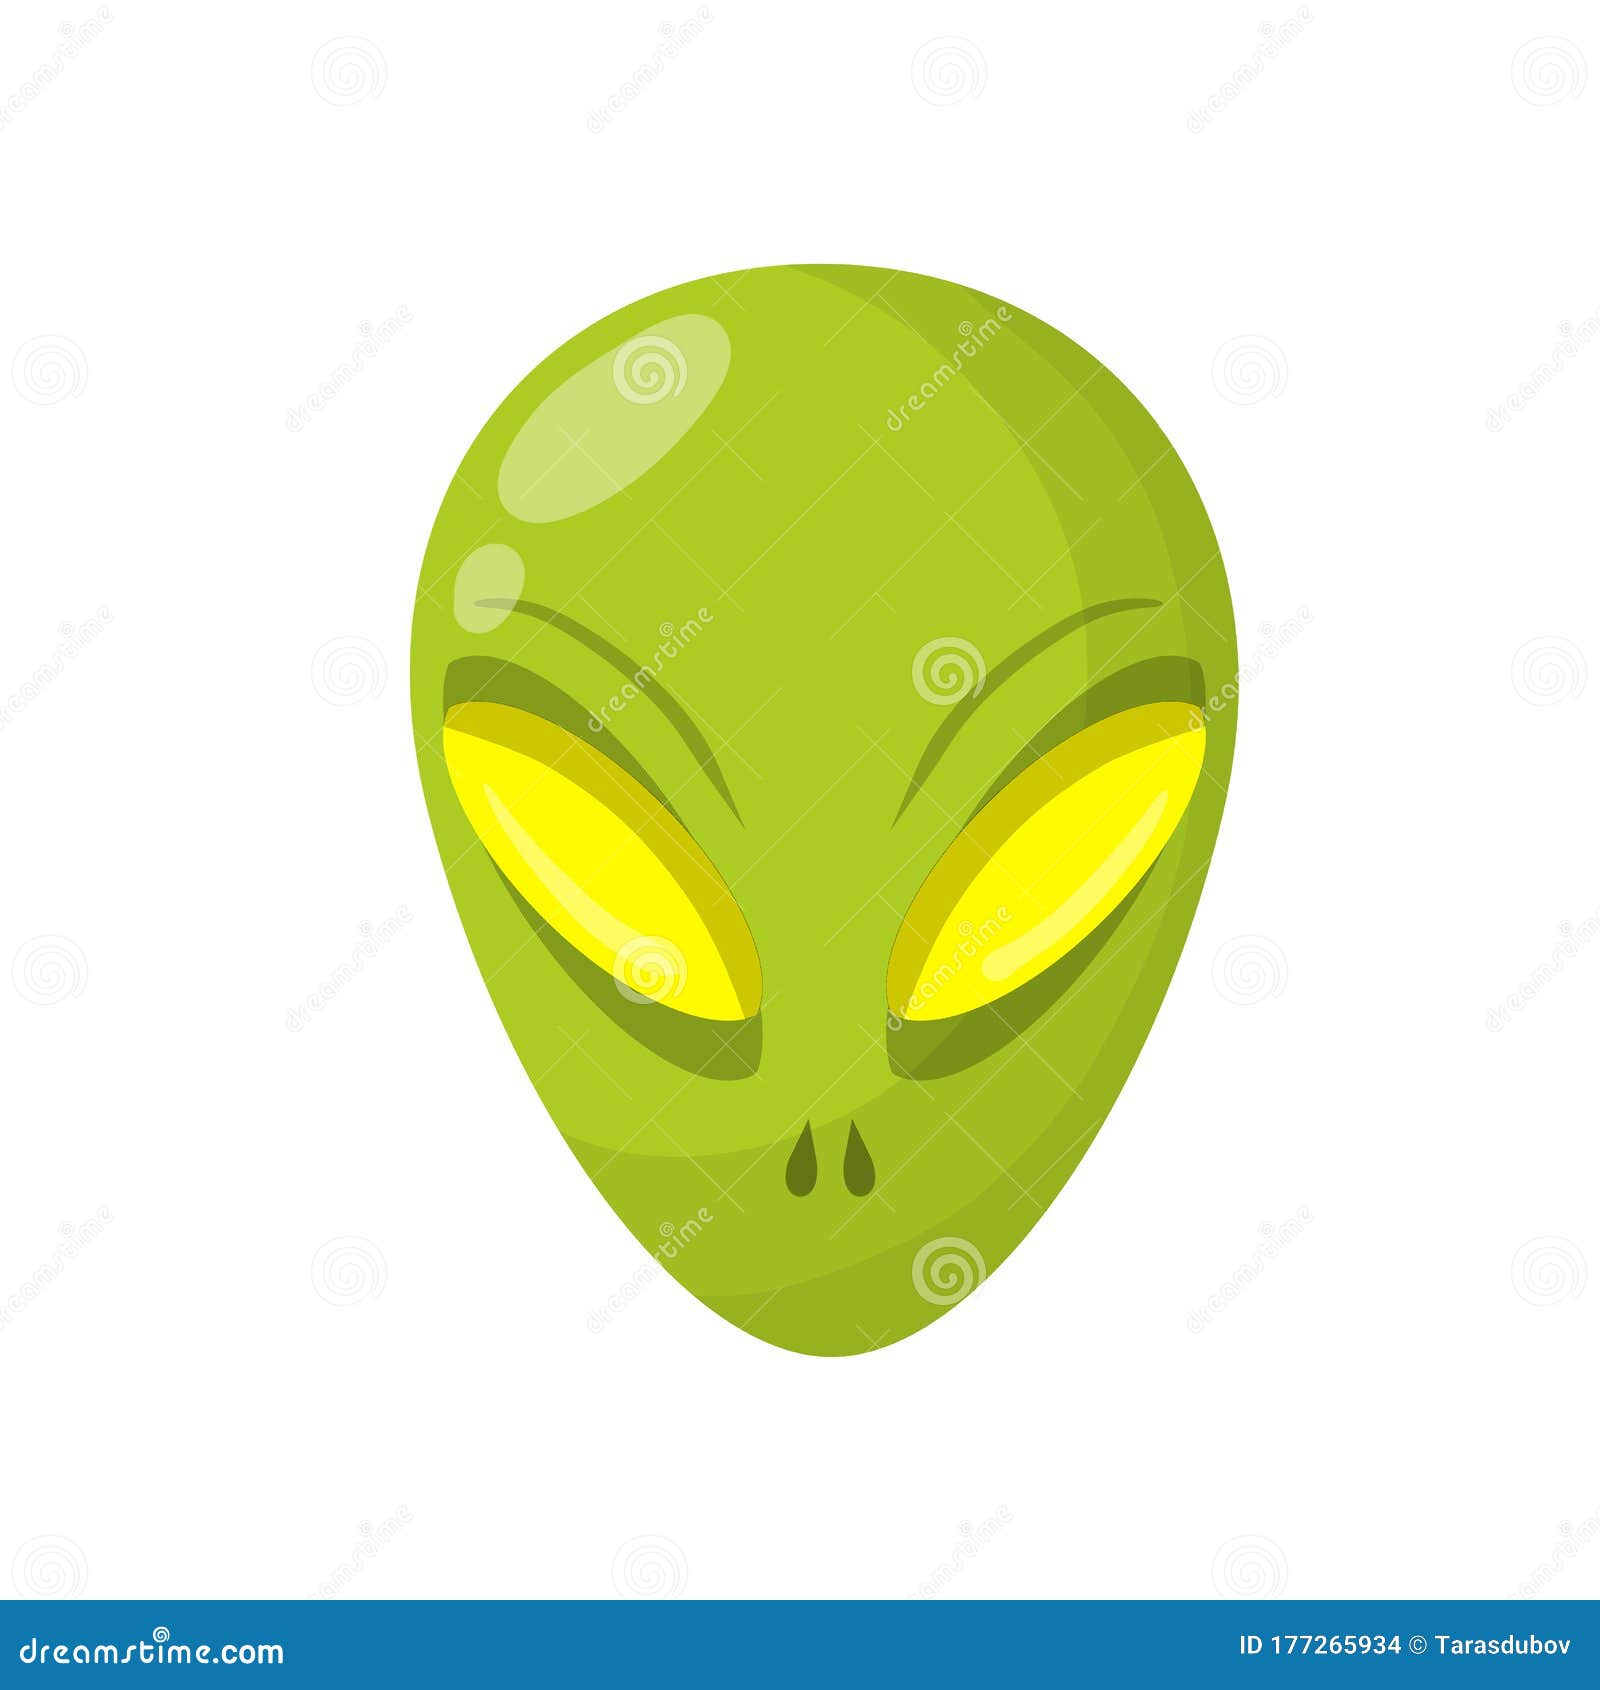 Alienígena de desenho animado verde com cabeça grande e olhos